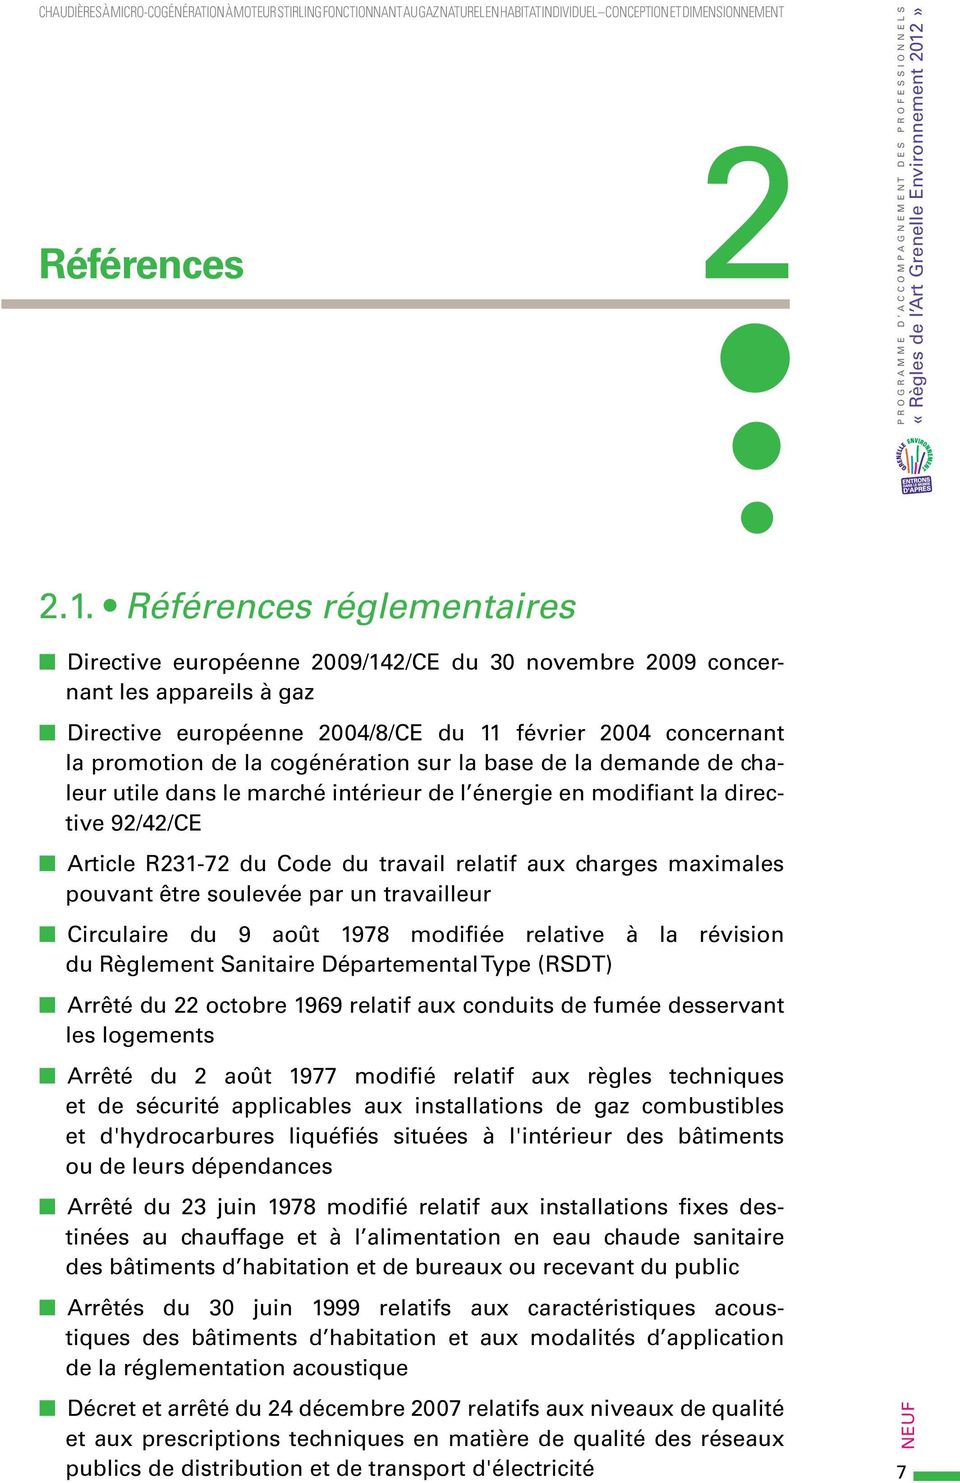 Références réglementaires Directive européenne 2009/142/CE du 30 novembre 2009 concernant les appareils à gaz Directive européenne 2004/8/CE du 11 février 2004 concernant la promotion de la